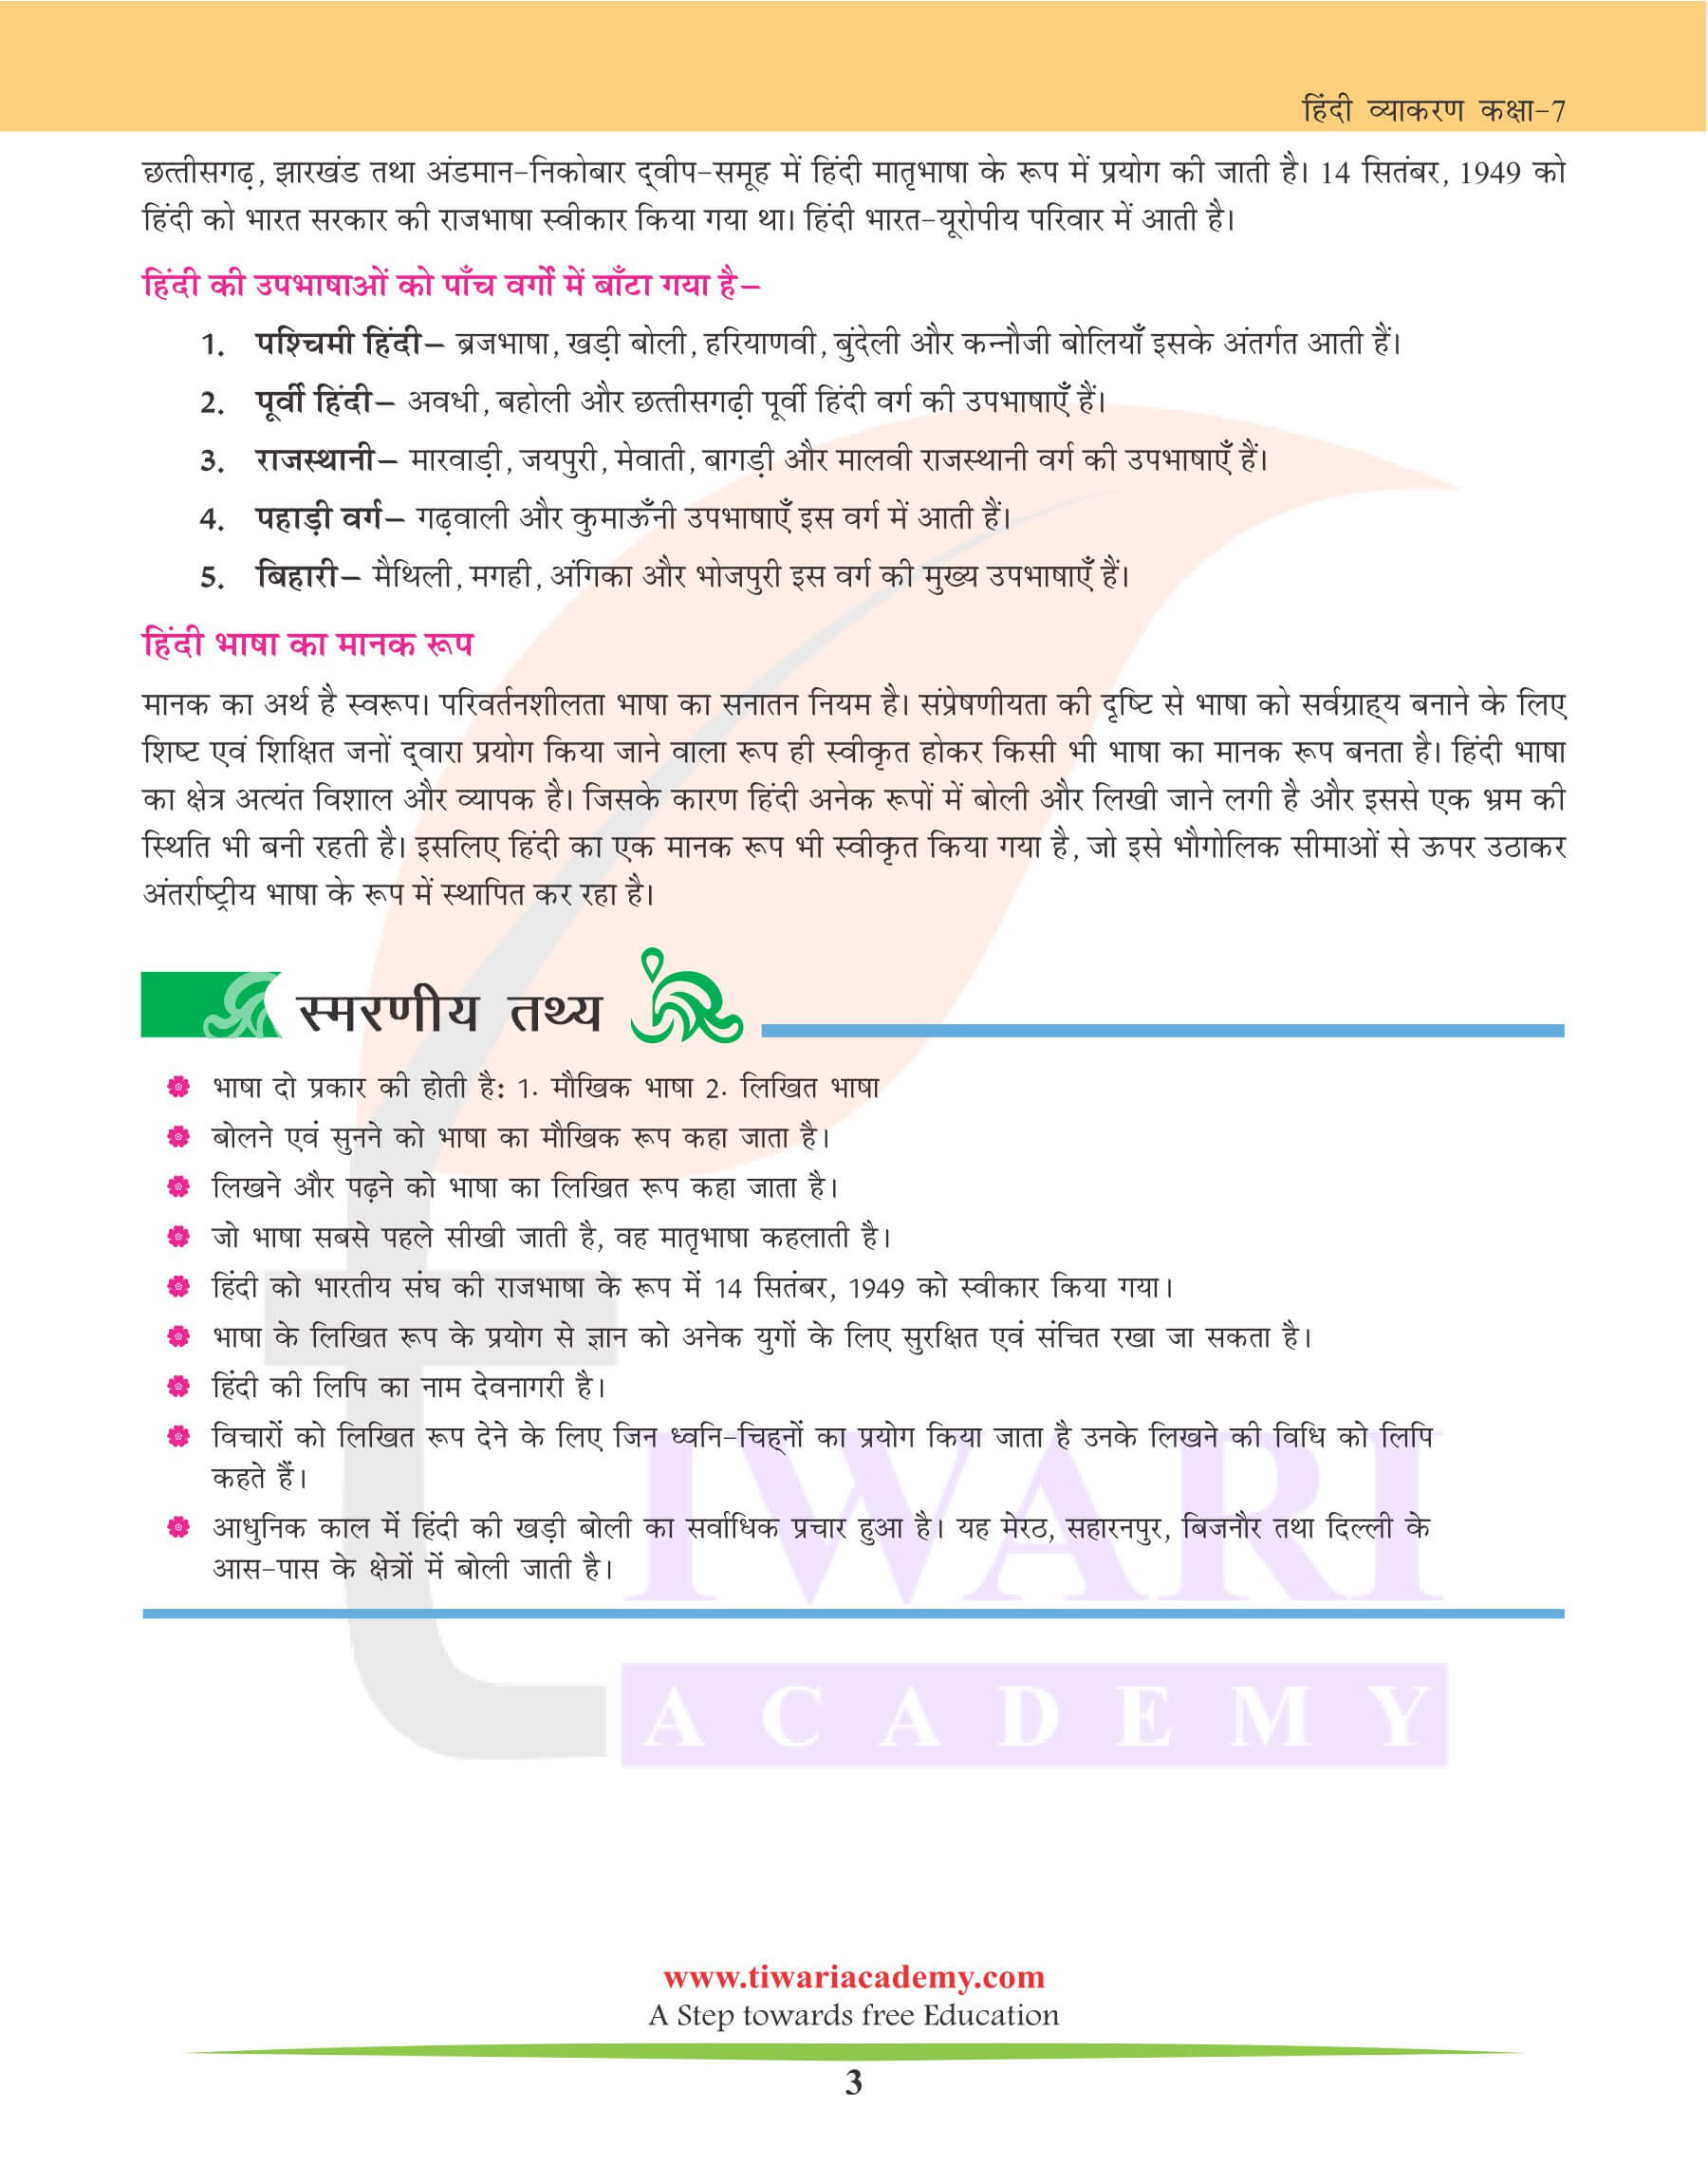 कक्षा 7 हिंदी व्याकरण पाठ 1 भाषा और व्याकरण